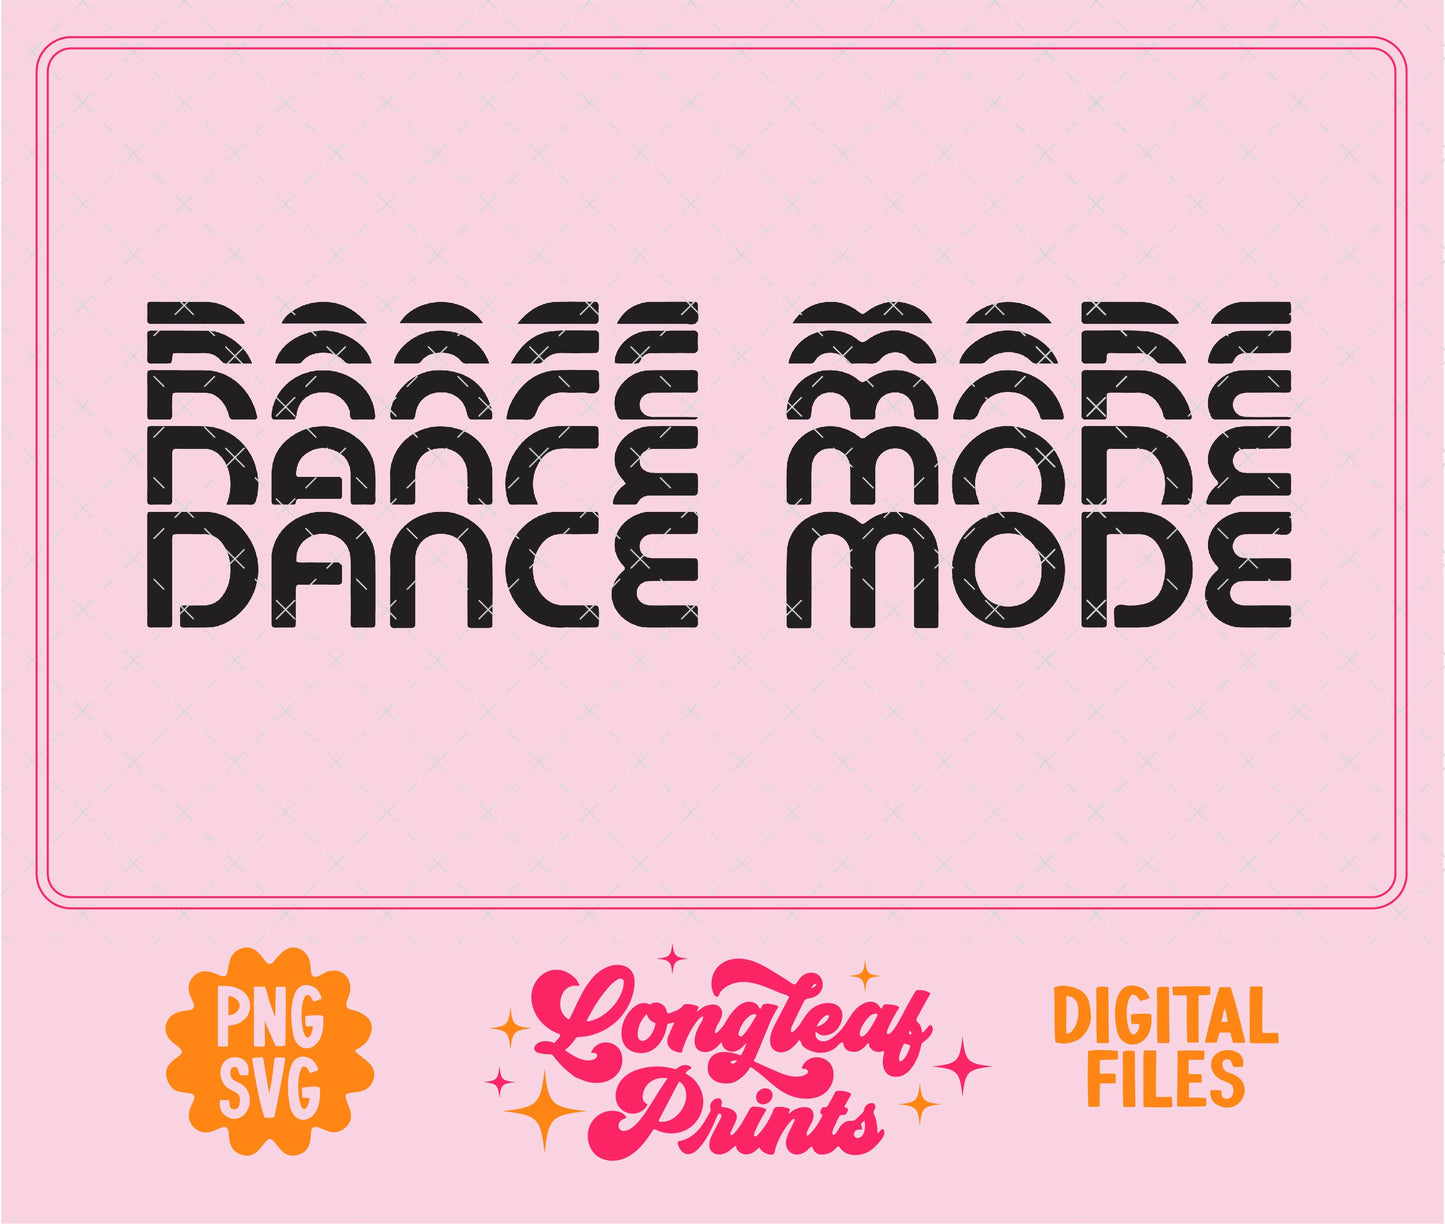 Dance Mode SVG Digital Download Design File